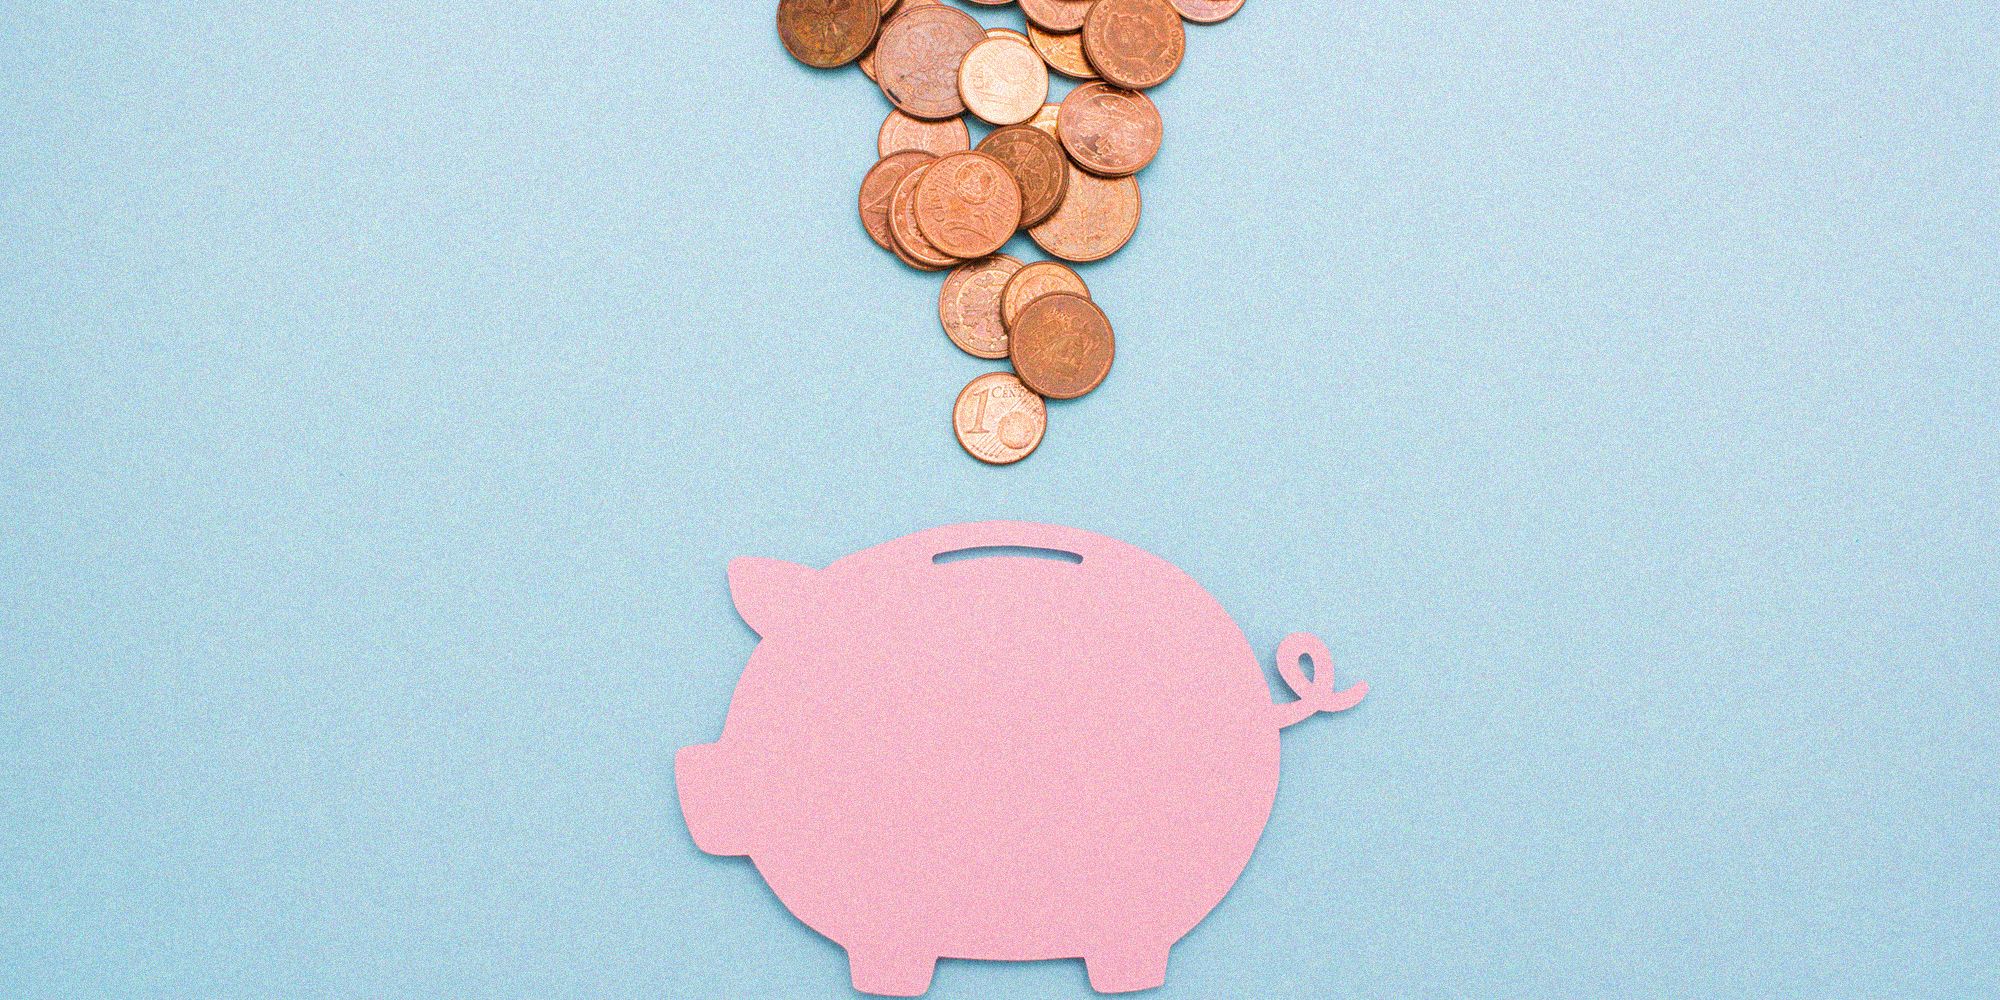 Come risparmiare soldi in un anno, i consigli per riuscirci